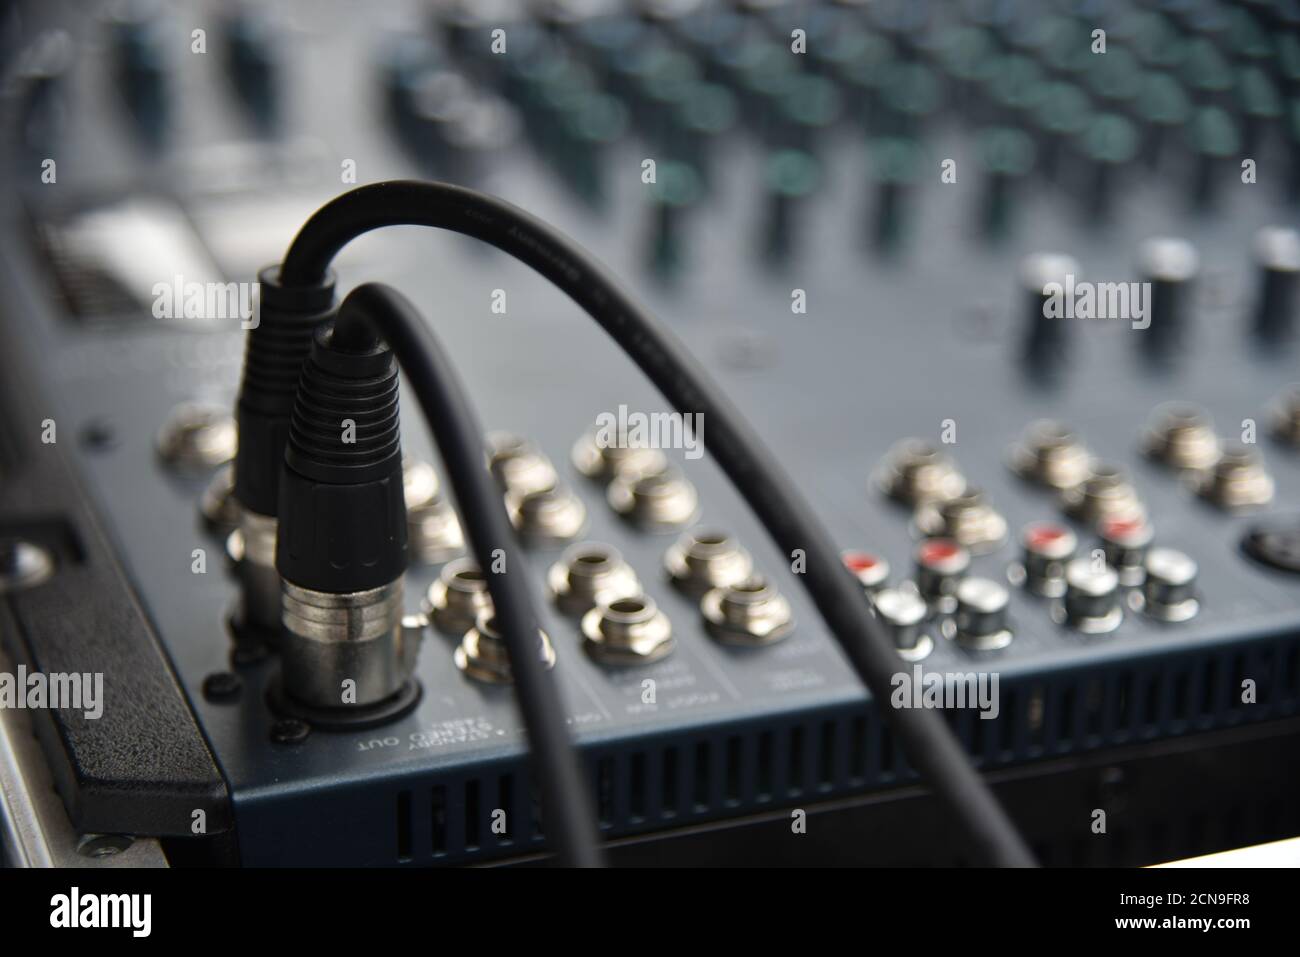 Musik mixer Equalizer Konsole für die Mixer der Soundkarte. Tontechniker audio mixer Equalizer. Sound Mastering für Radio- und TV-Broadcas Stockfoto